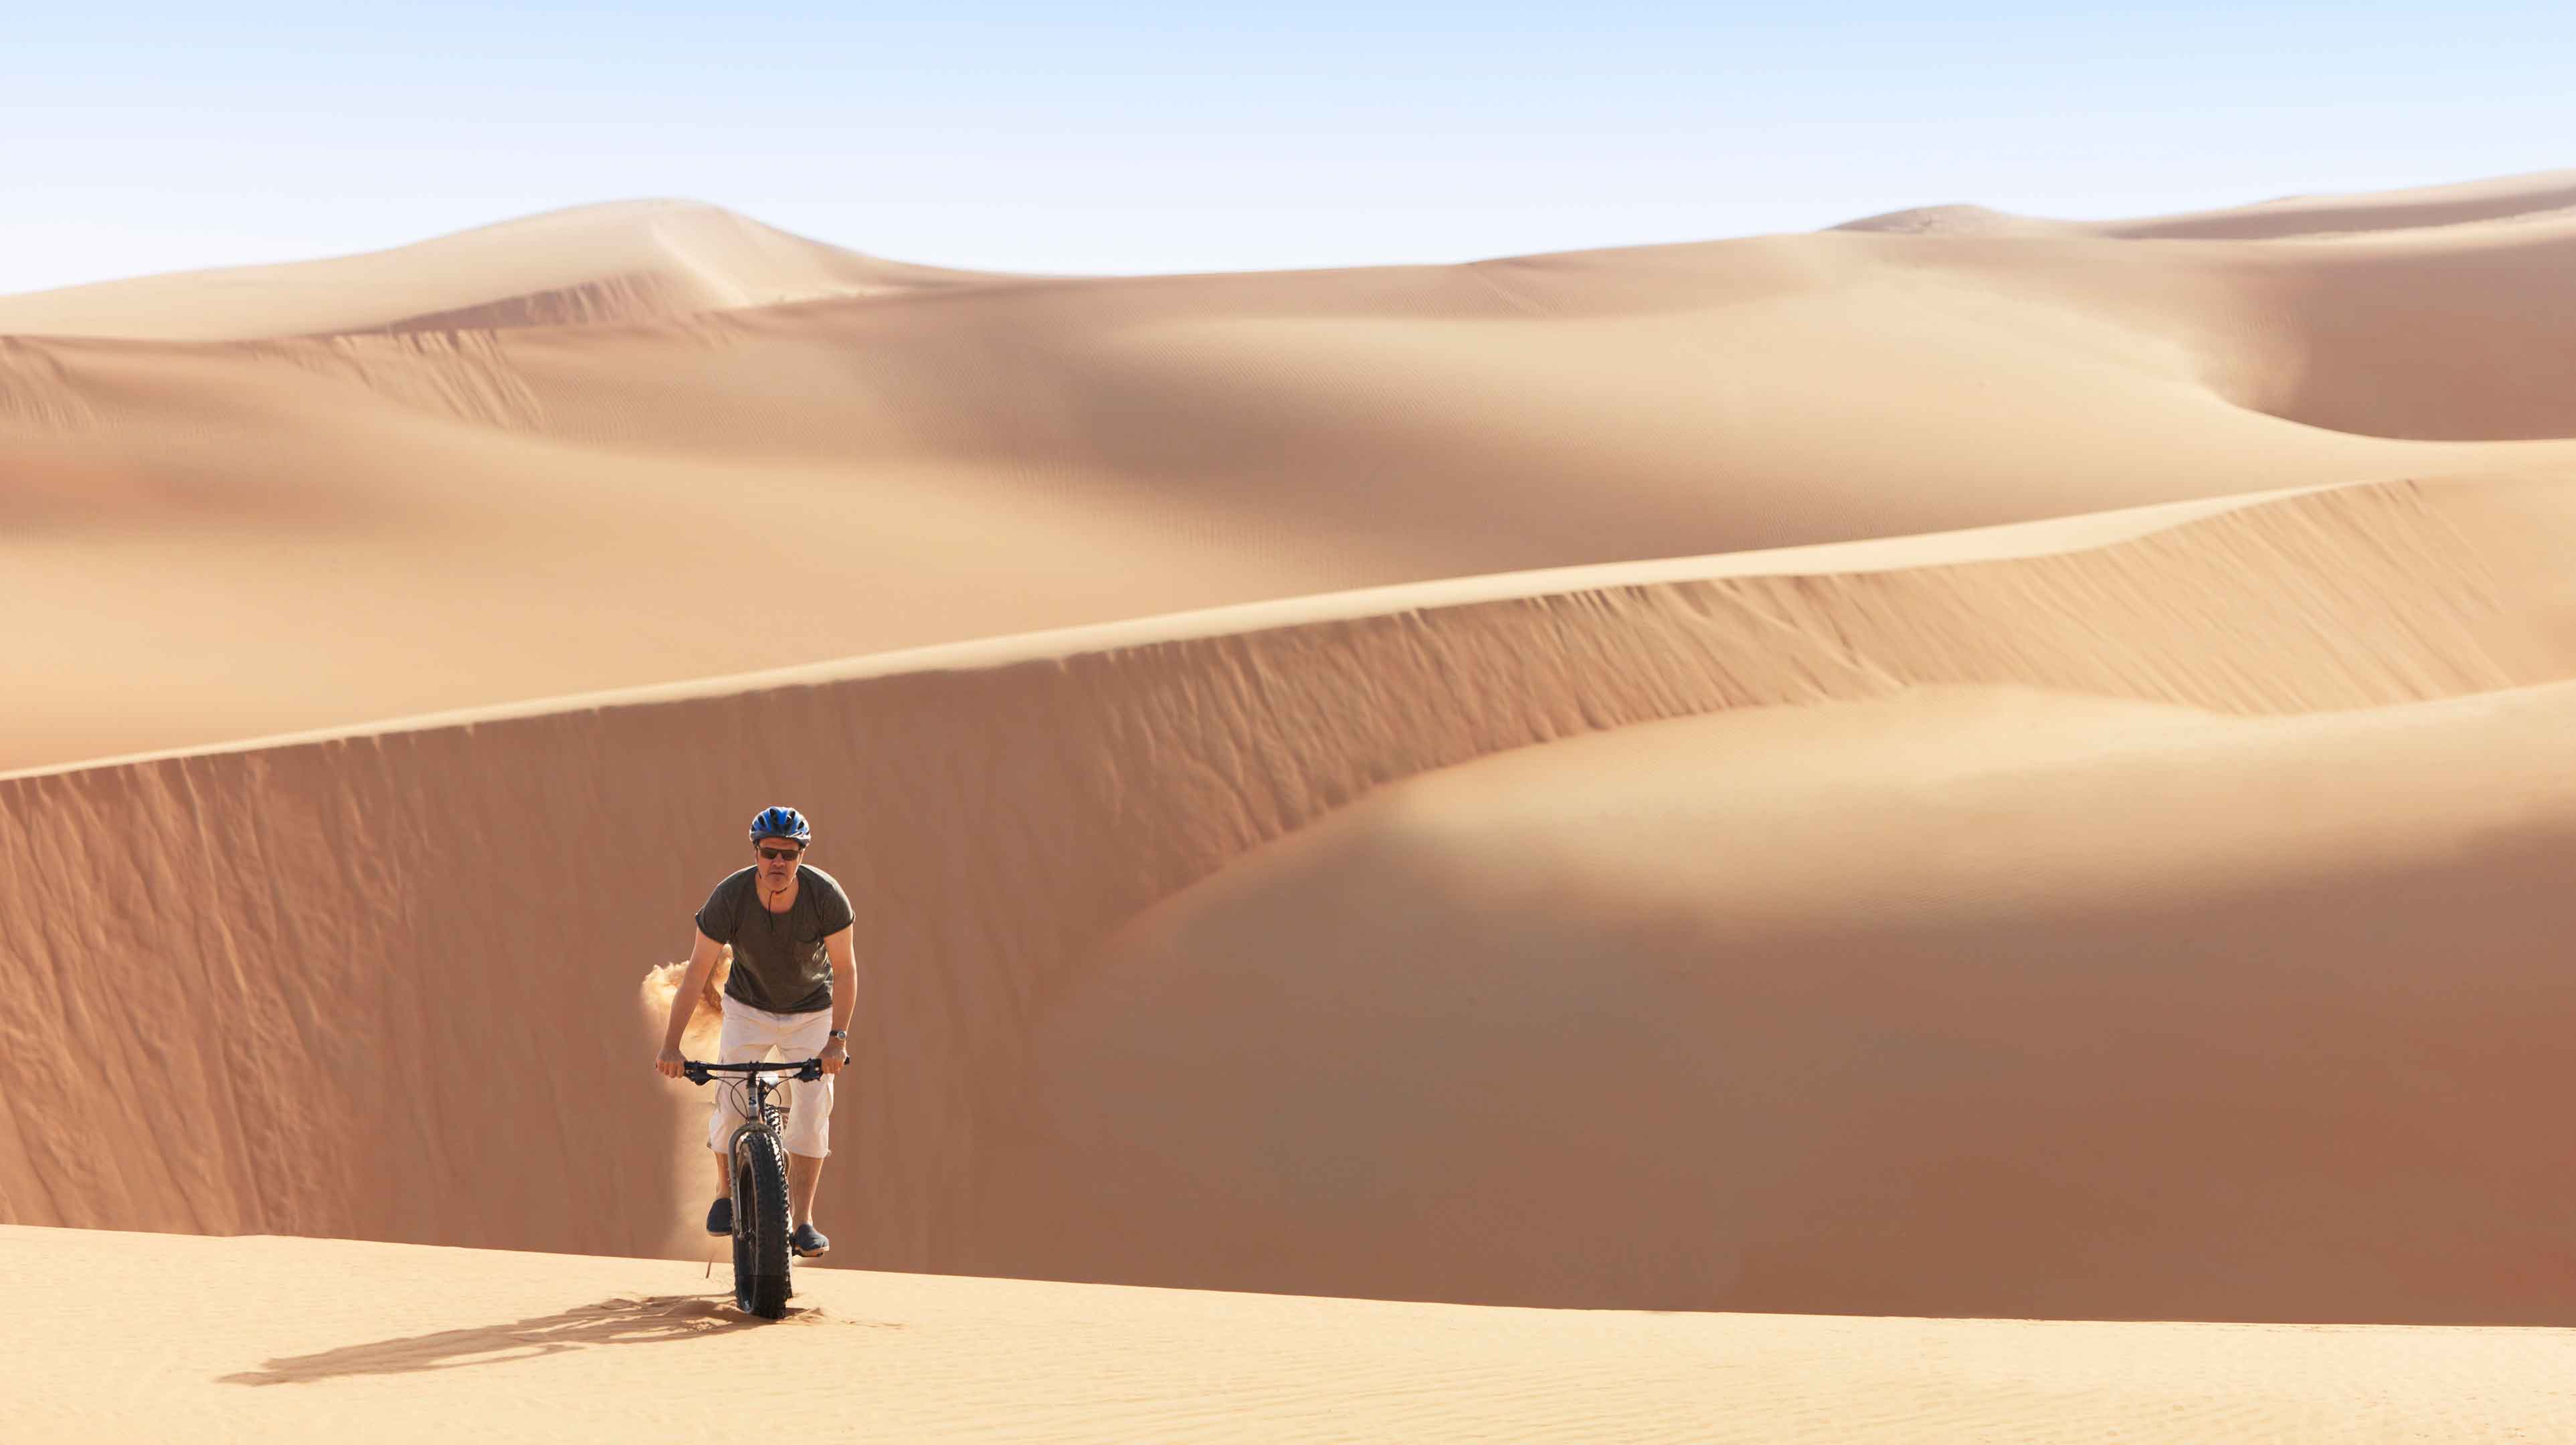 4. Correte in fat bike sulle dune del deserto più alte del mondo